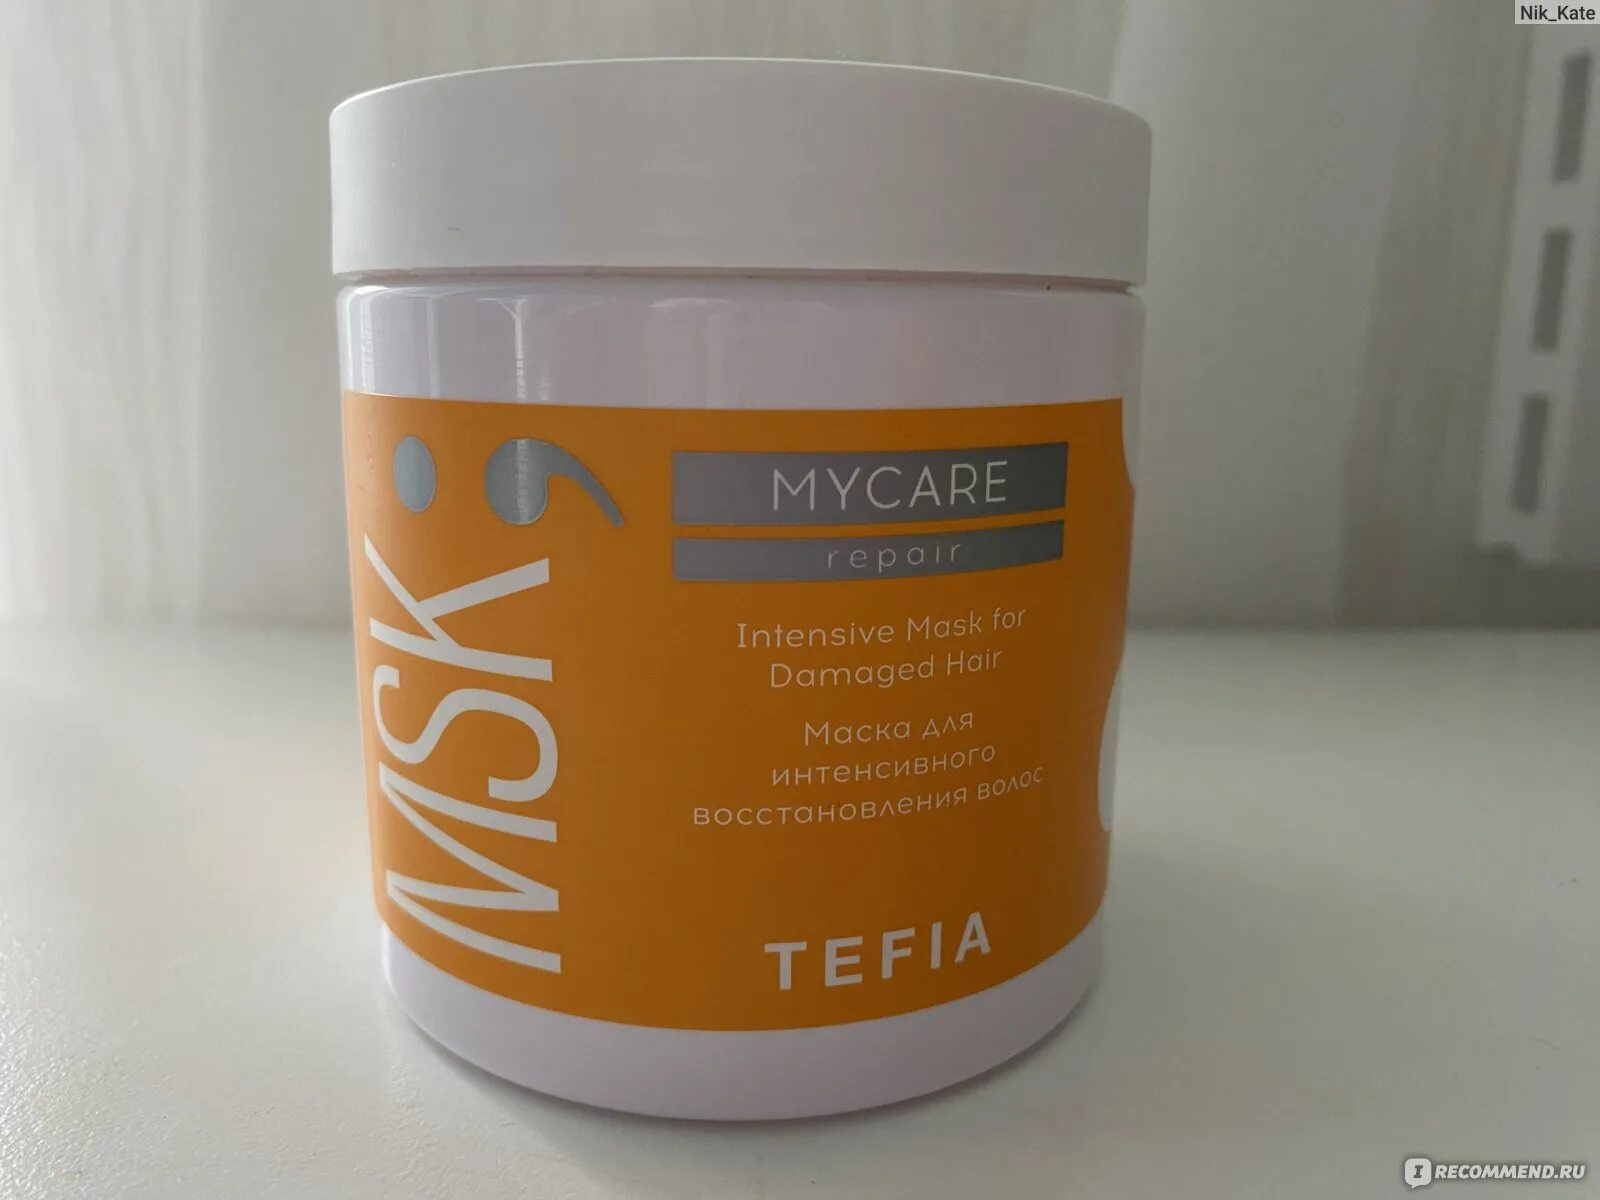 Тефия маска для интенсивного восстановления. Tefia MYCARE Repair. Тефия уплотняющая маска для тонких волос. Маска для окрашенных волос профессиональная MYCARE Тефиа состав. Маска для уплотнения волос